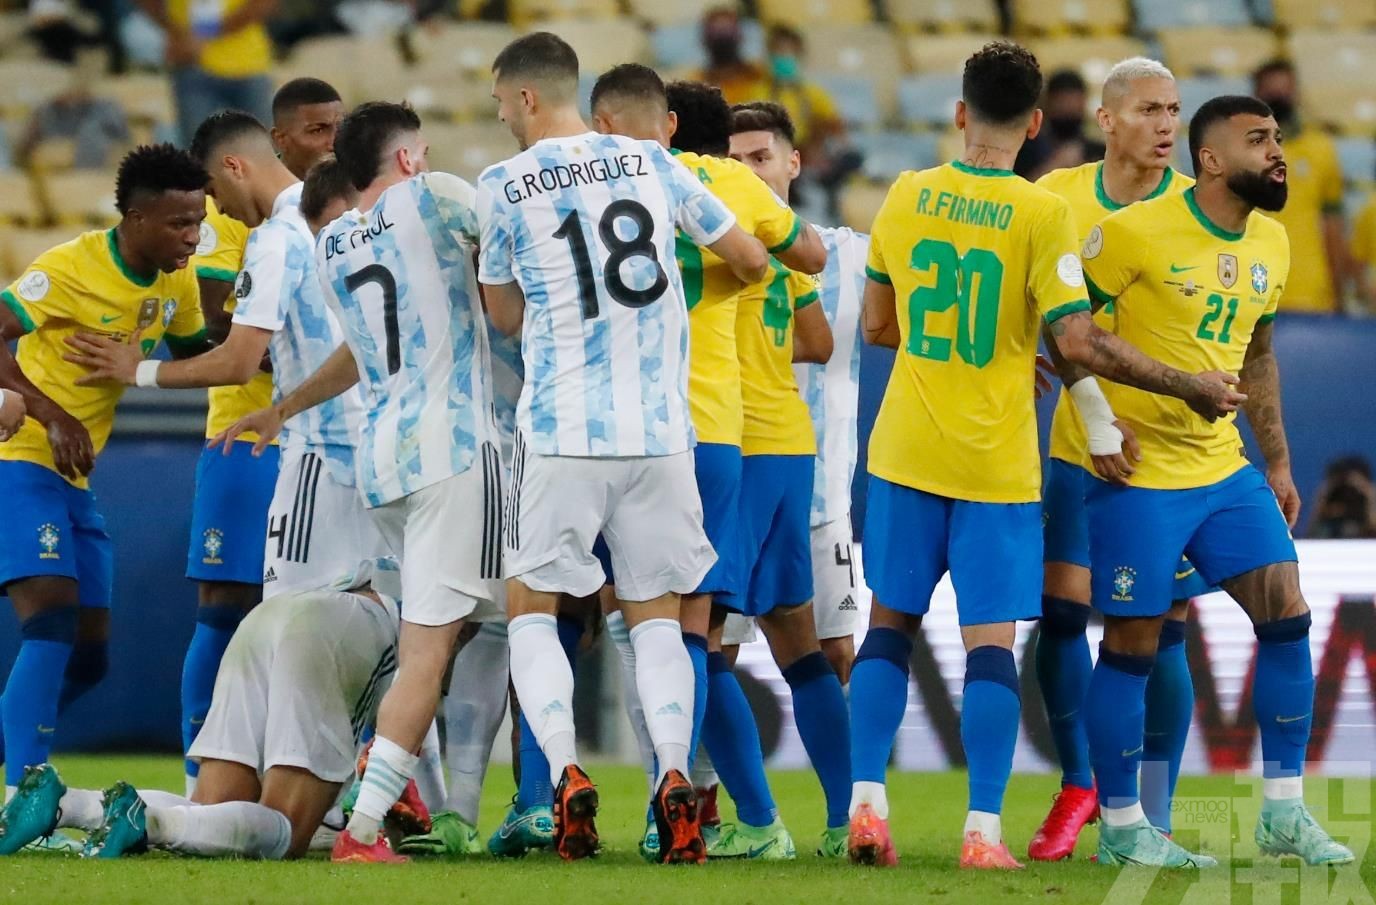 美洲盃阿根廷力克巴西粉碎28年魔咒